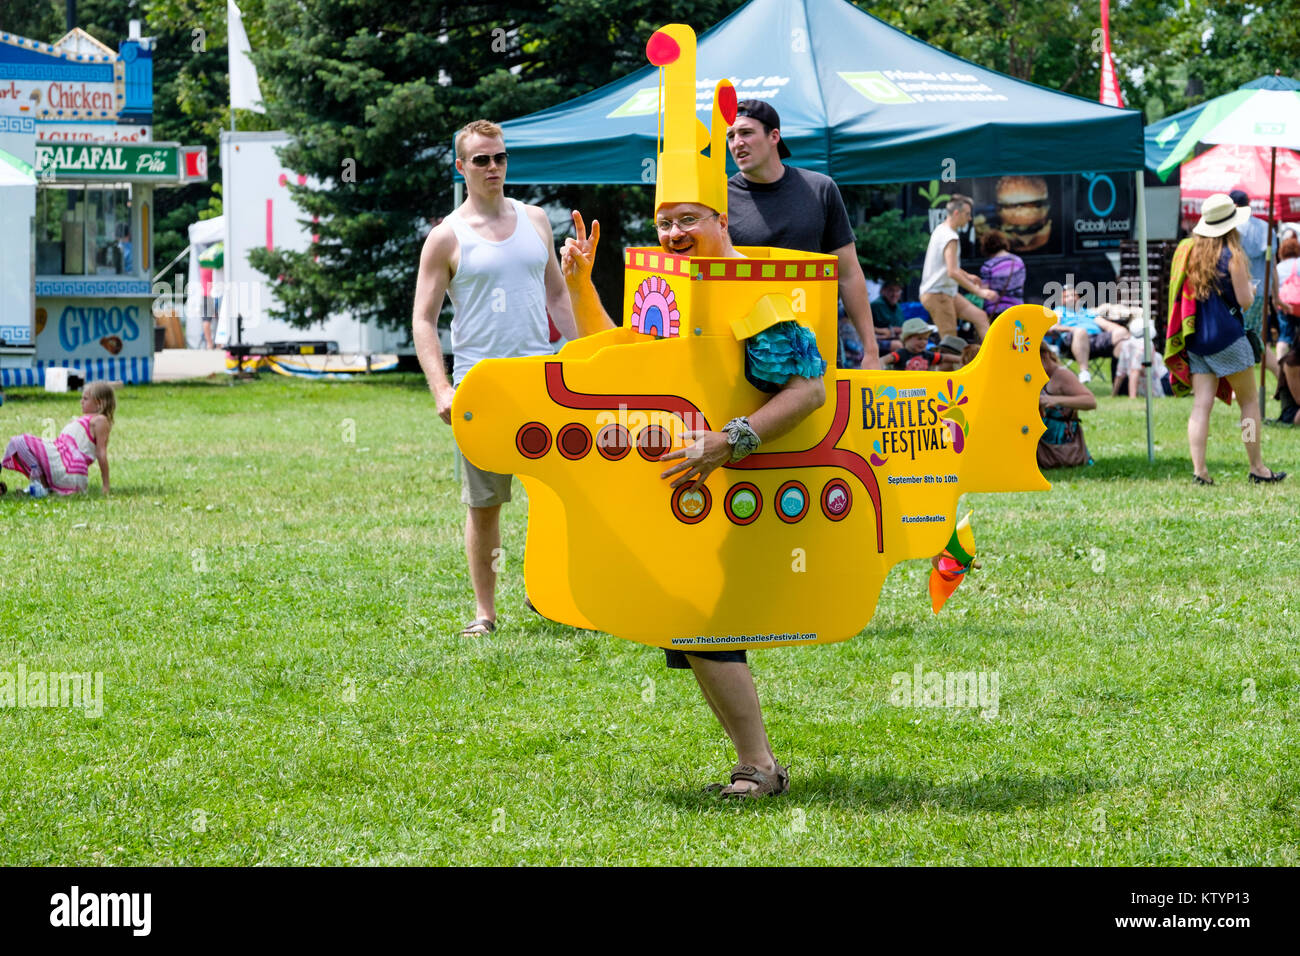 Mann verkleidet mit einem gelben U-Boot Kostüm, Prop, Förderung der London Beatles Festival, ein Sommerfest in London, Ontario, Kanada statt. Stockfoto